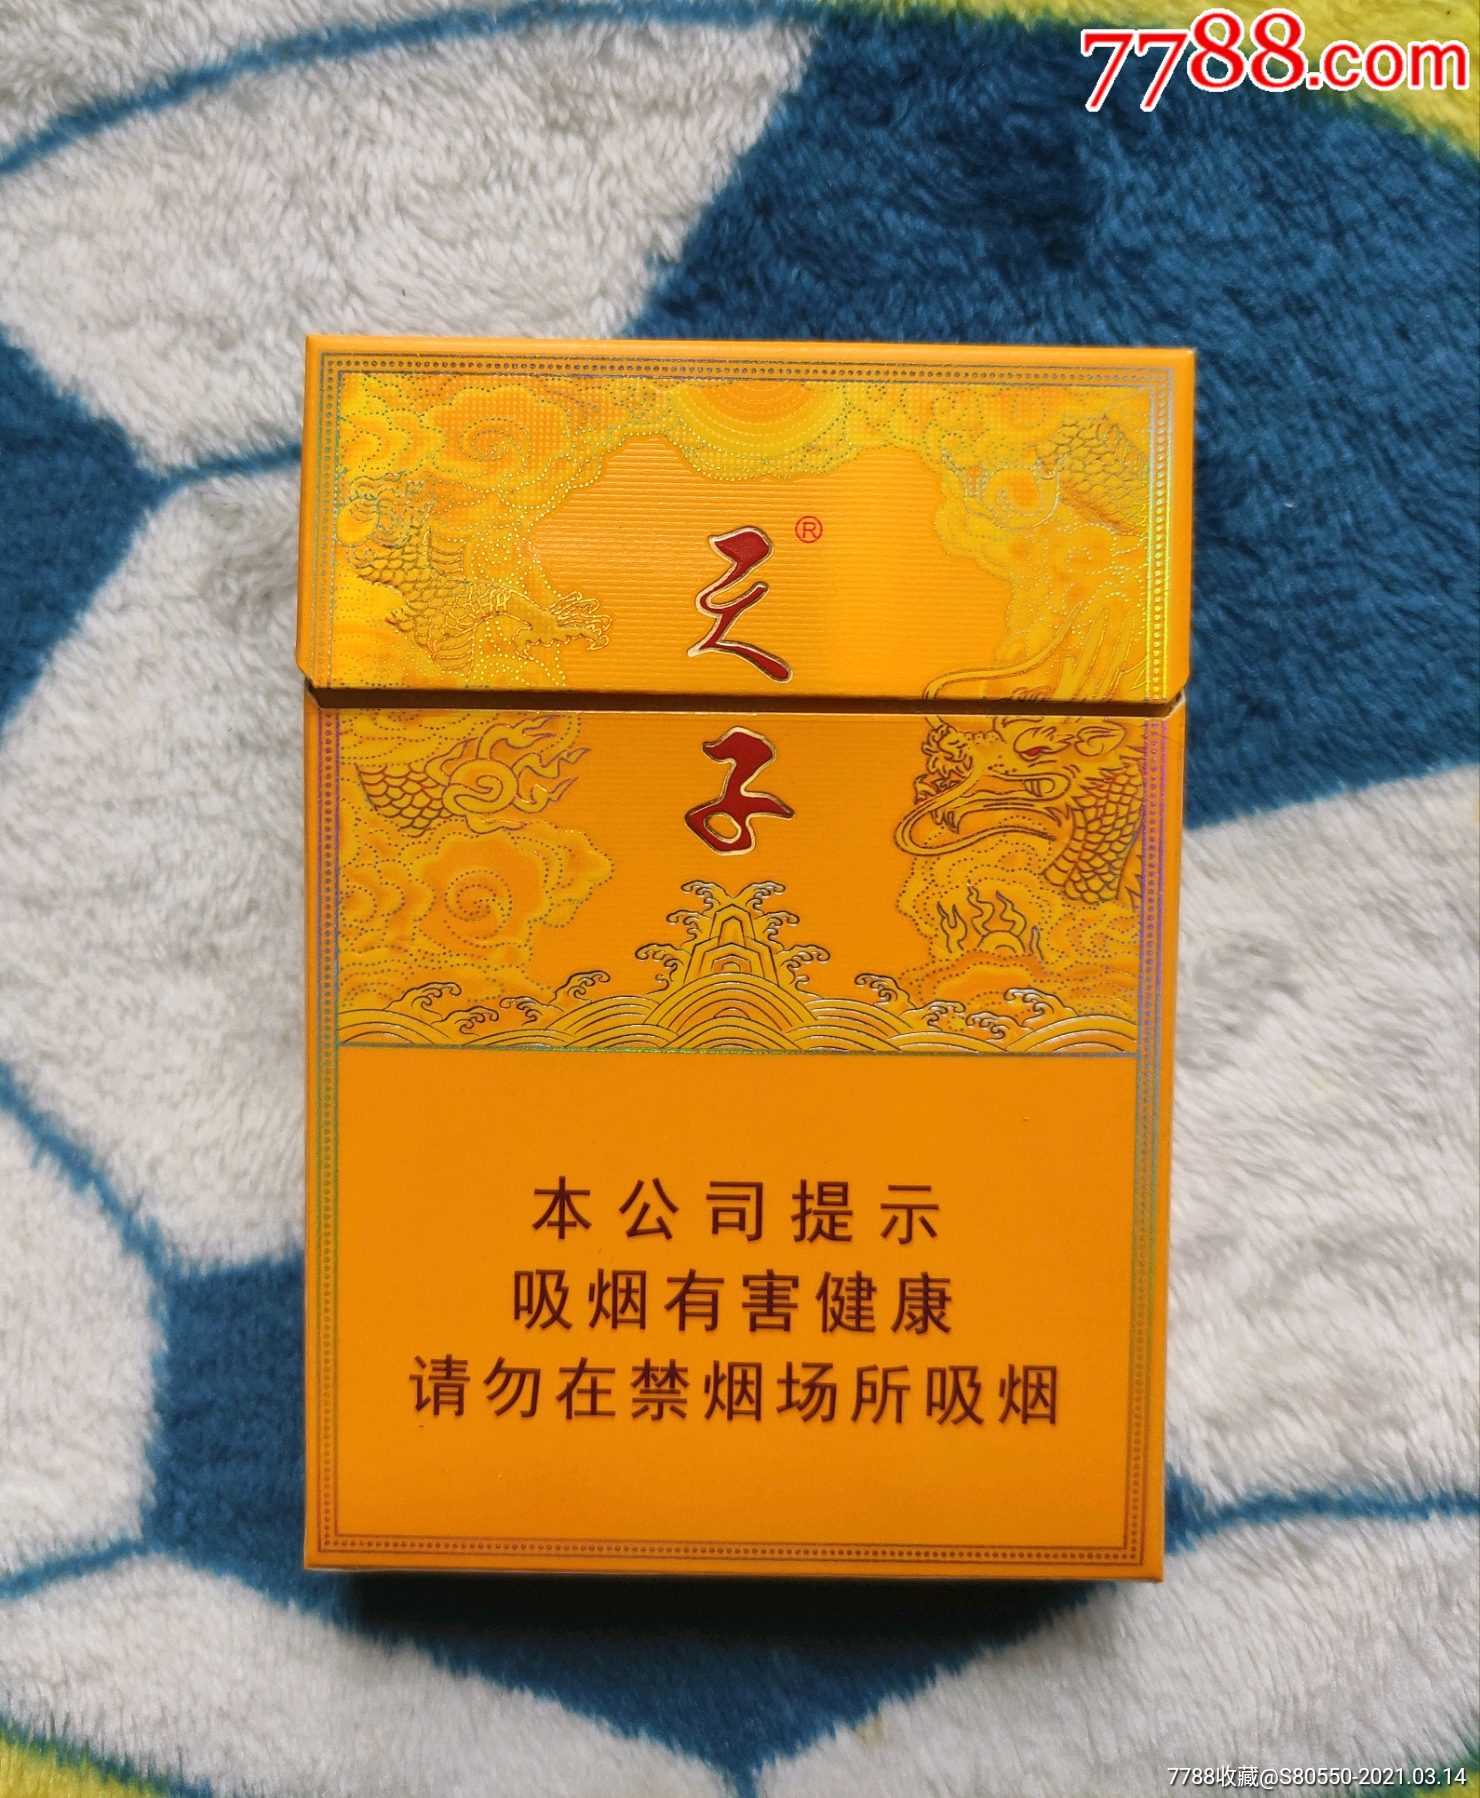 天子硬盒香烟18元图片